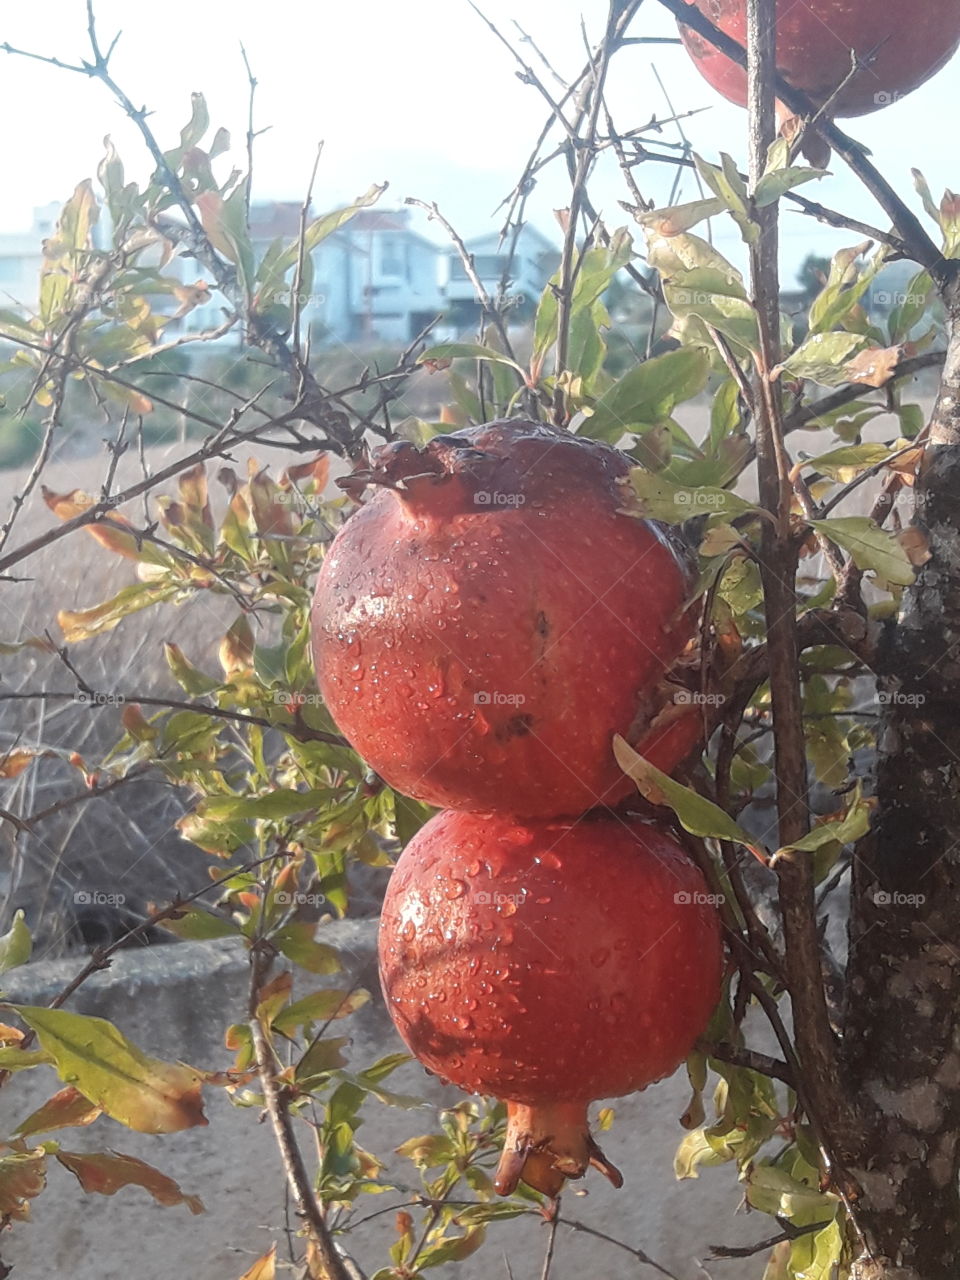 my beautiful fevourite tree pomegranates